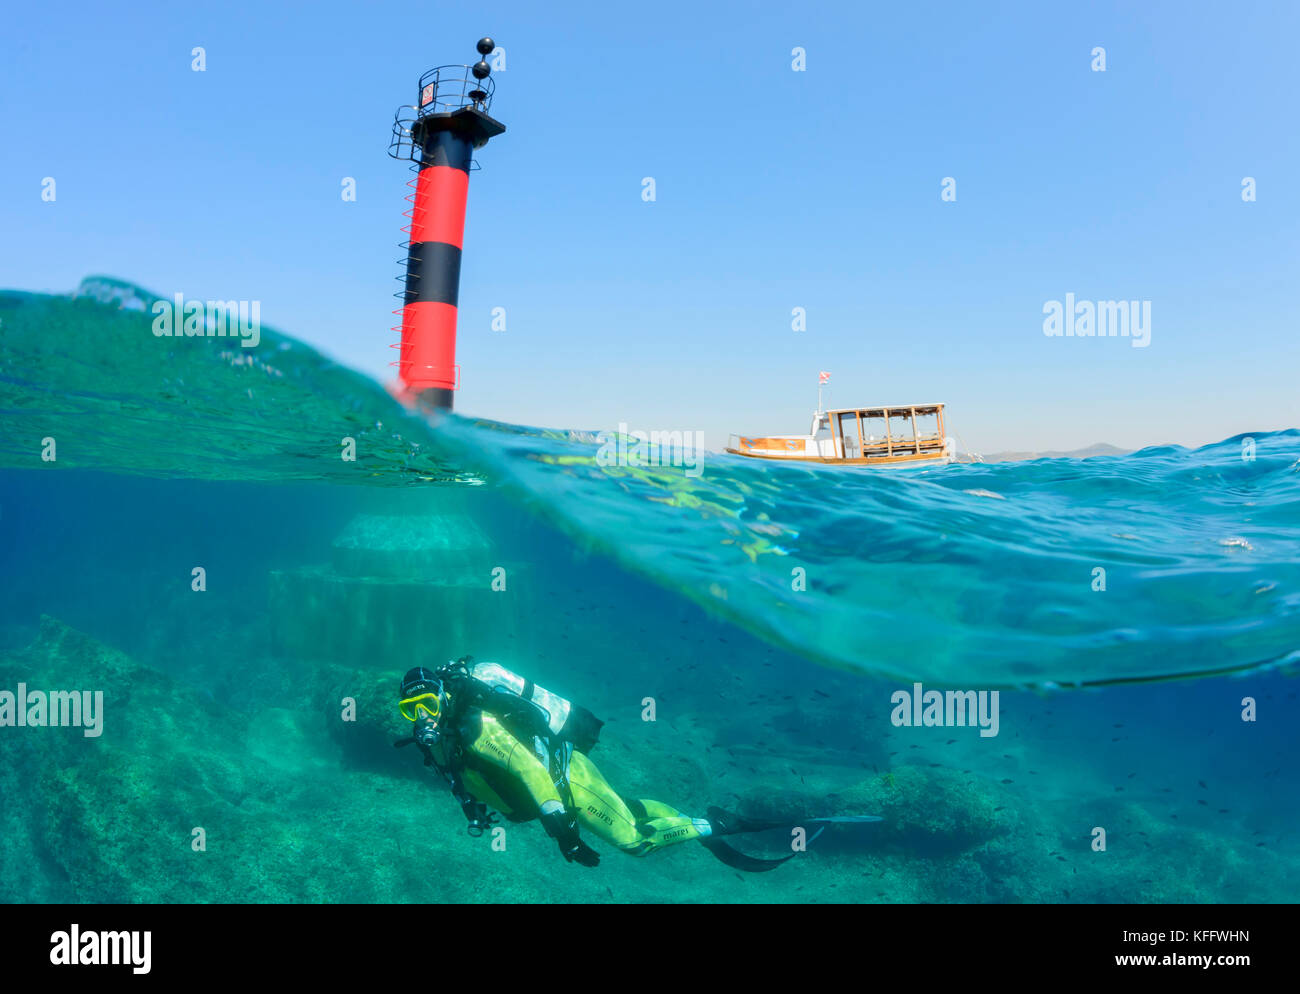 Duplex, phare de plongée sous marine et underwateradriatic, mer méditerranée, Sveti Filip i Jakov, Dalmatie, Croatie, M. oui Banque D'Images